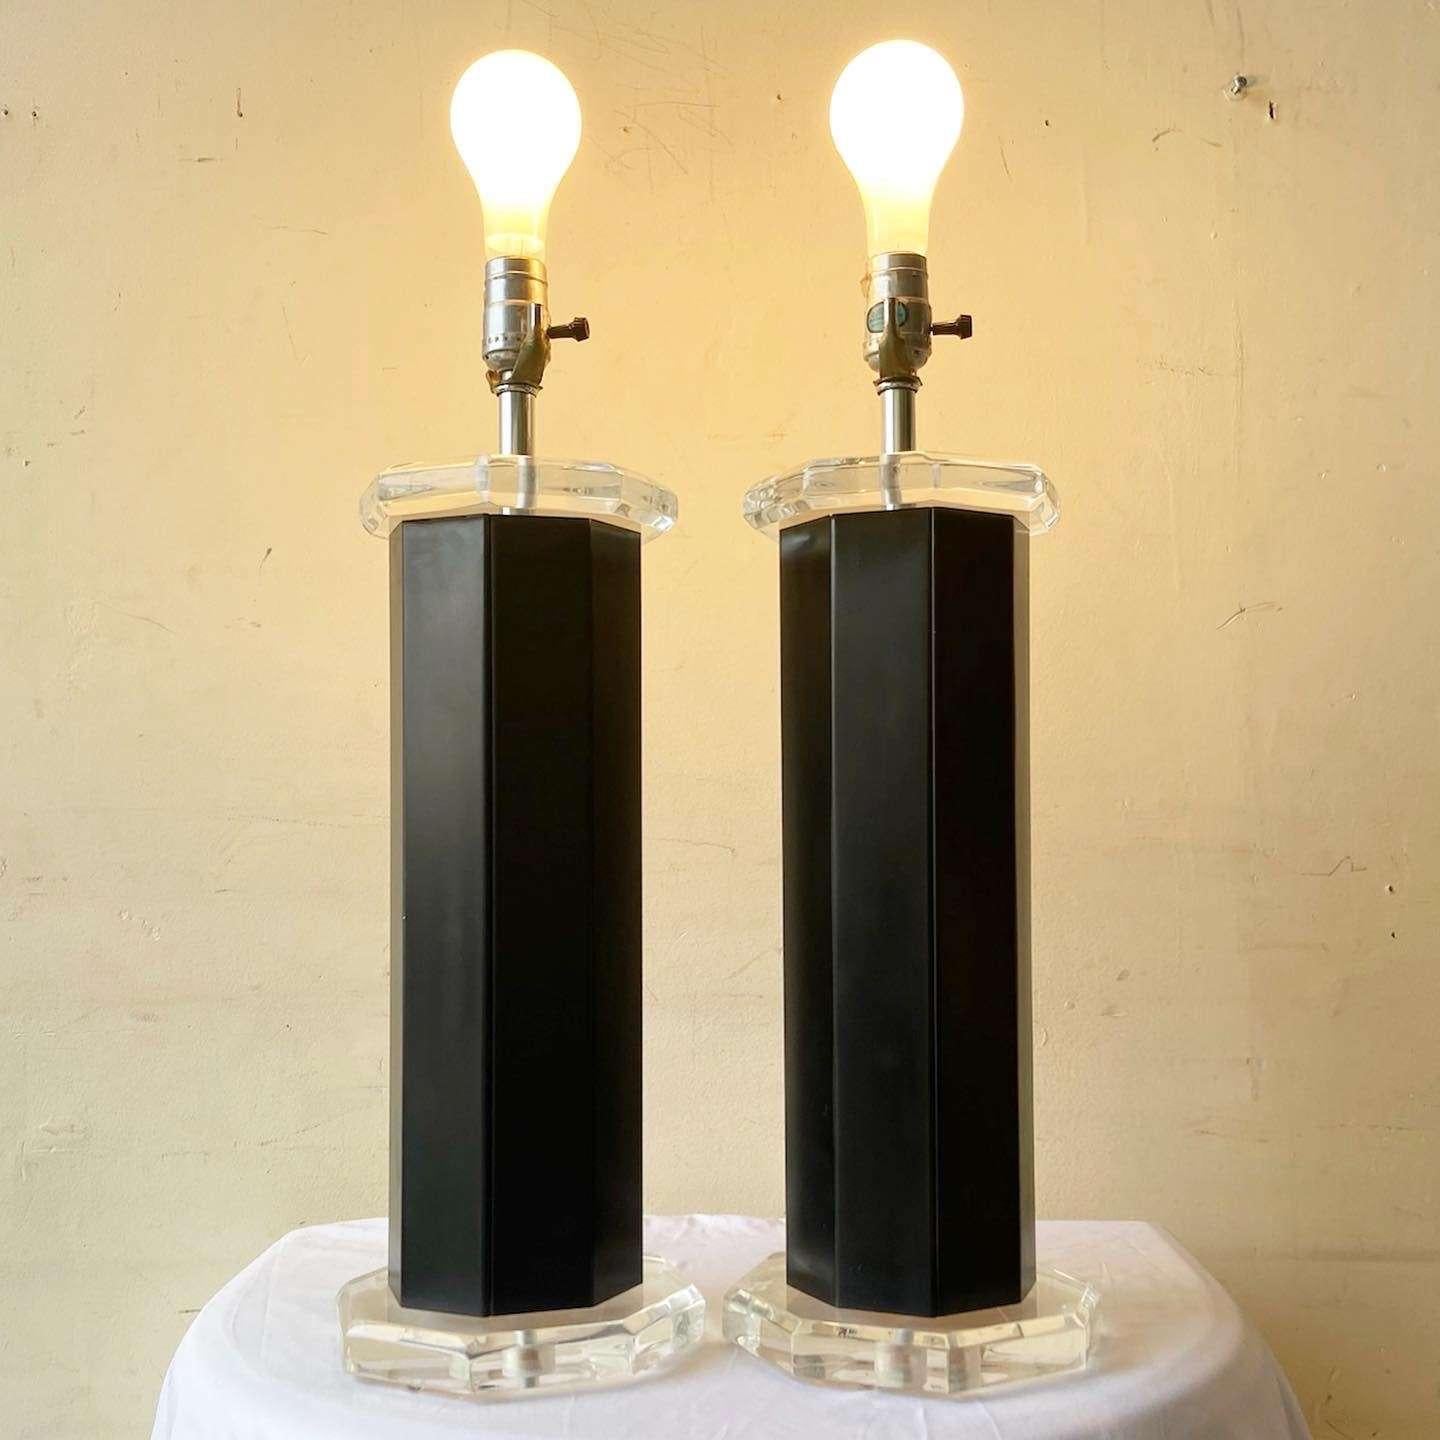 Exceptionnelle paire de lampes de table postmodernes en lucite et métal noir. Chacune présente une forme octogonale avec de la lucite au-dessus et en dessous du corps noir.
